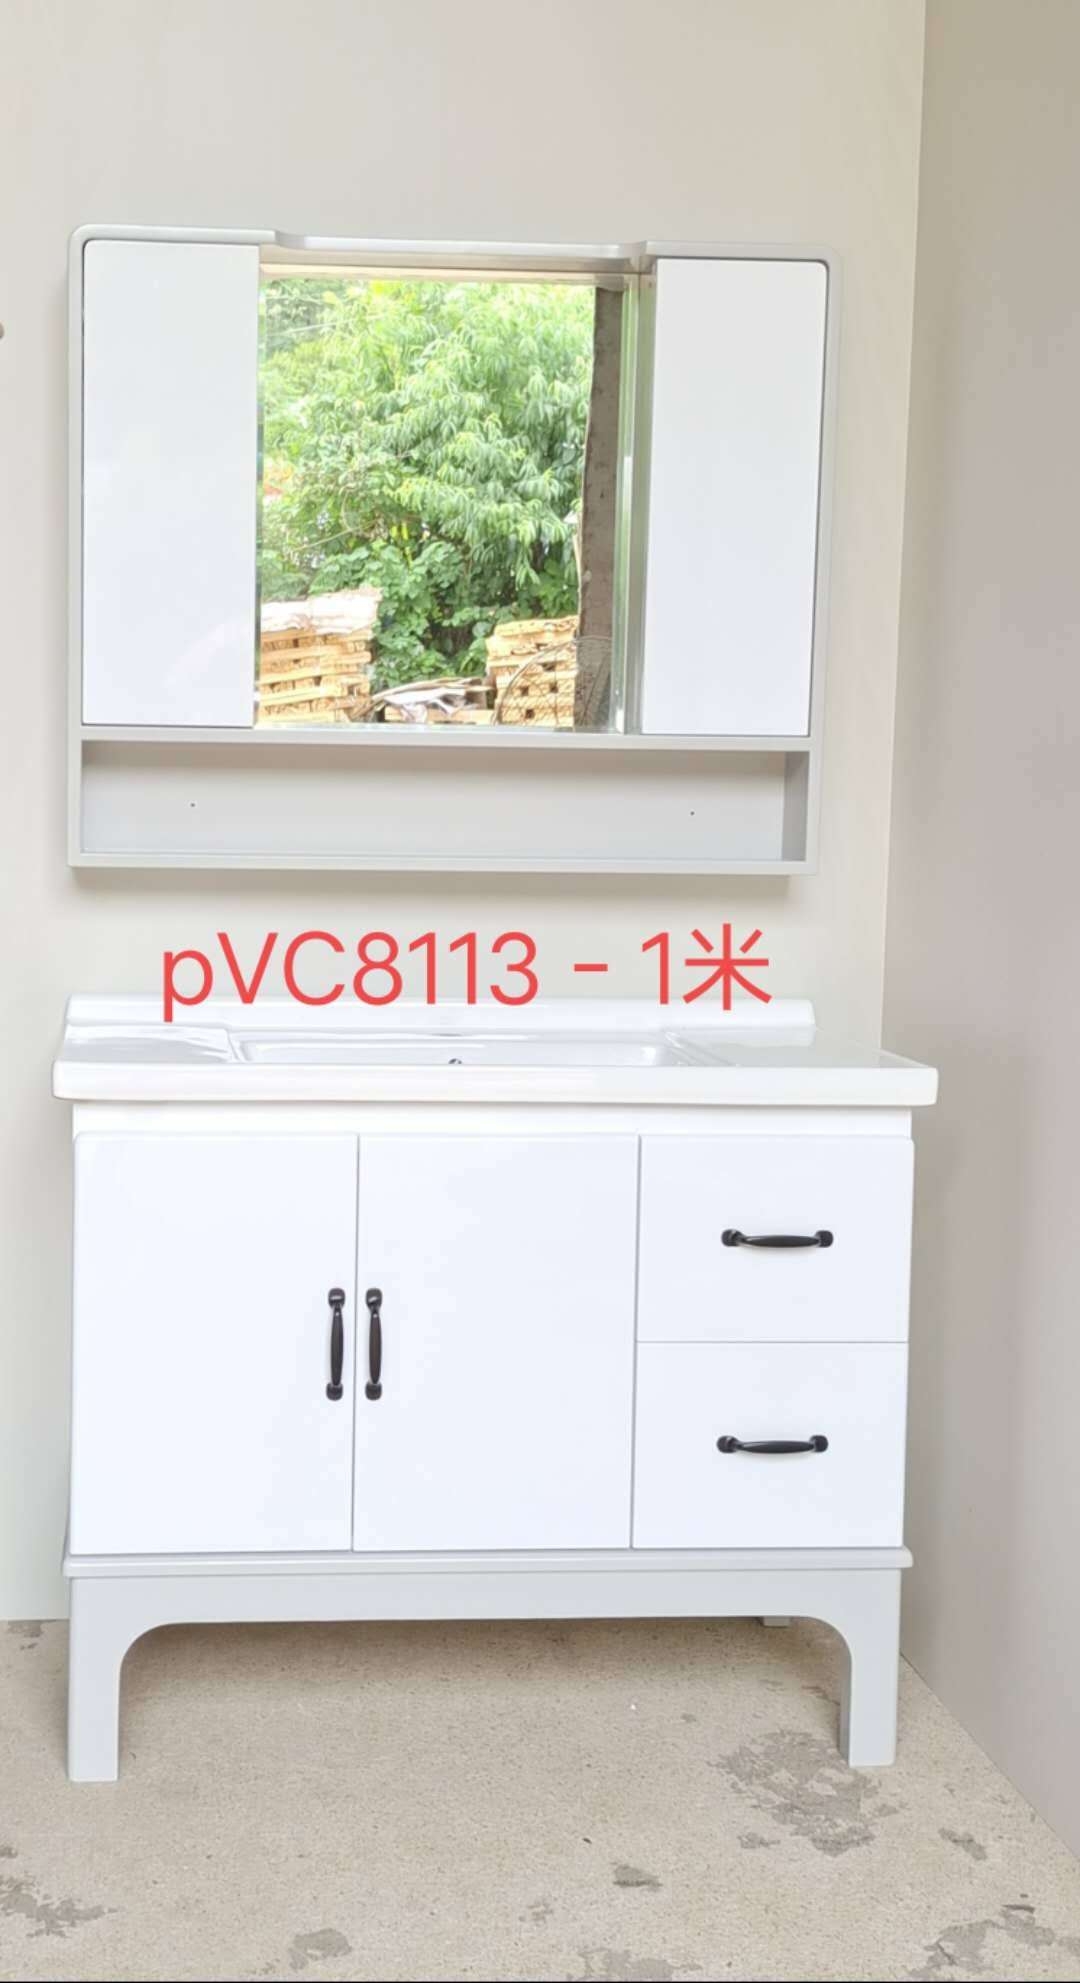 PVc8113－1米